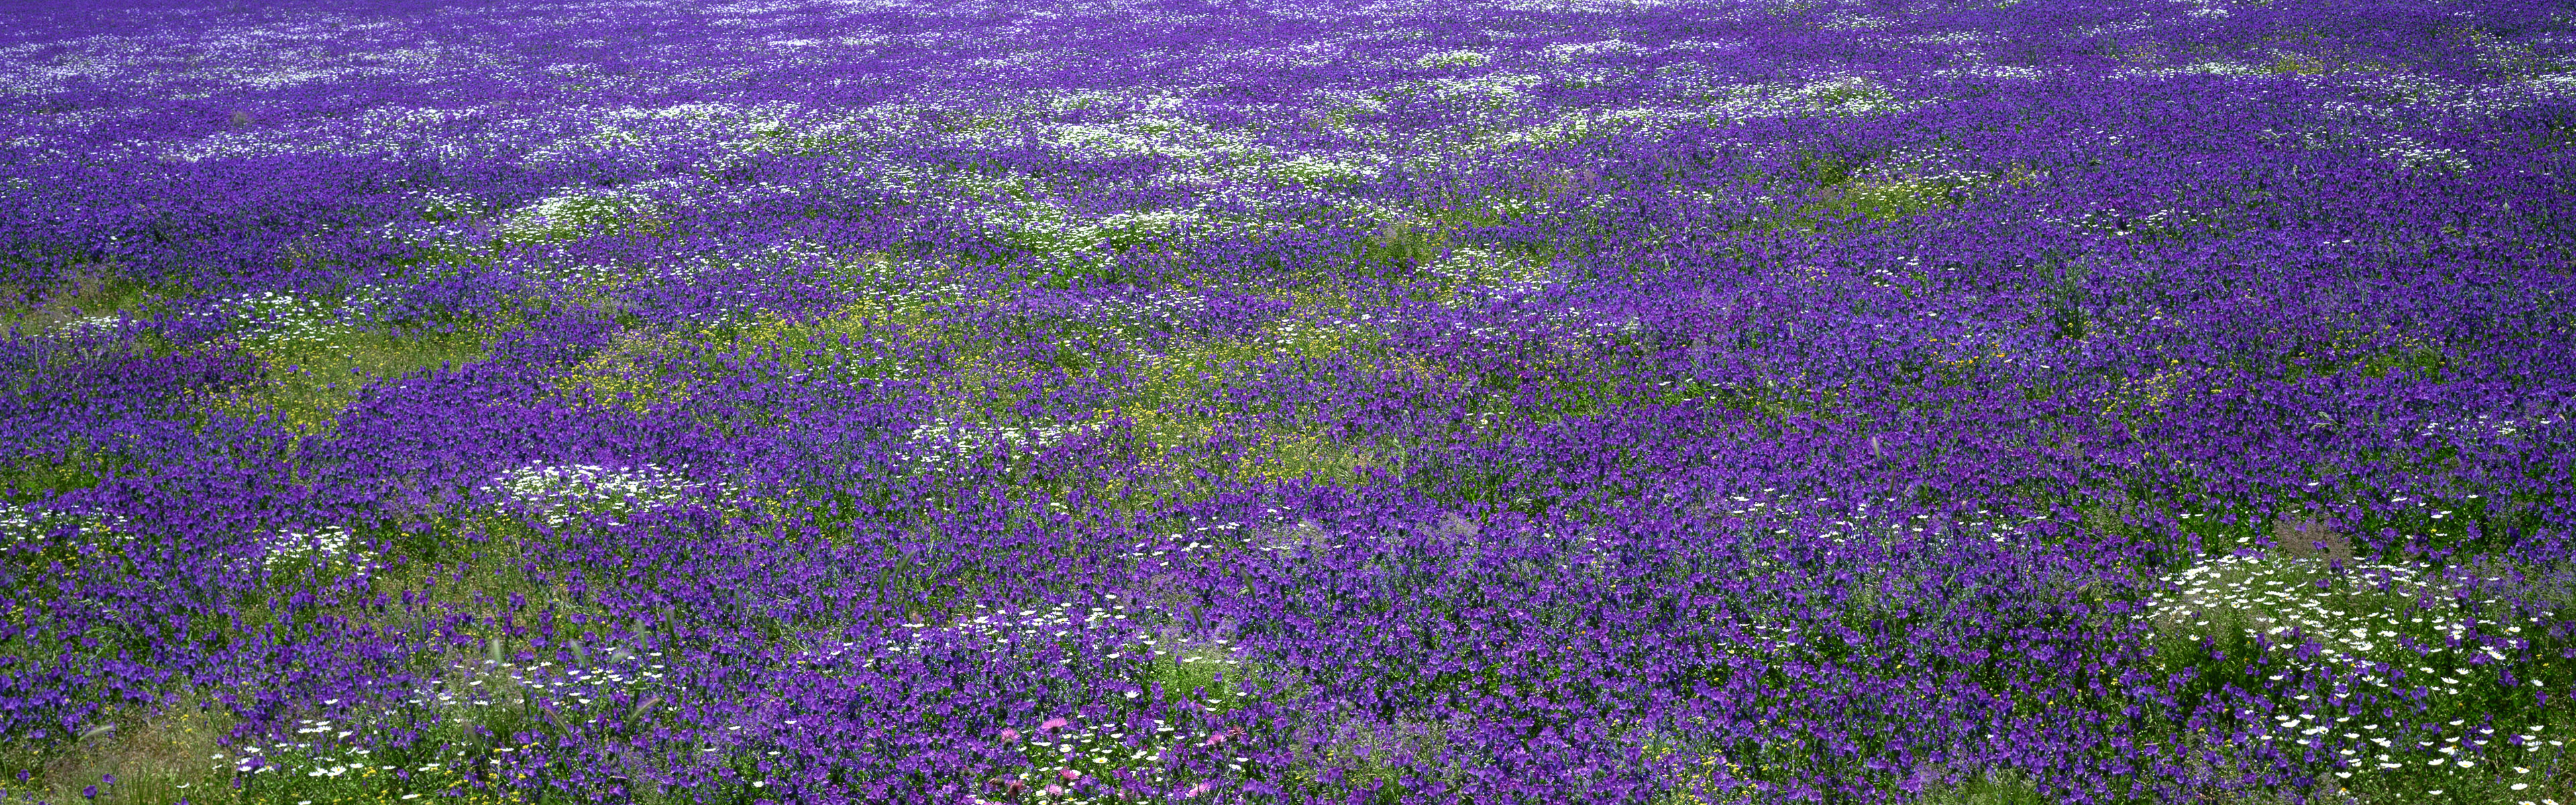 поле фиолетовых цветов